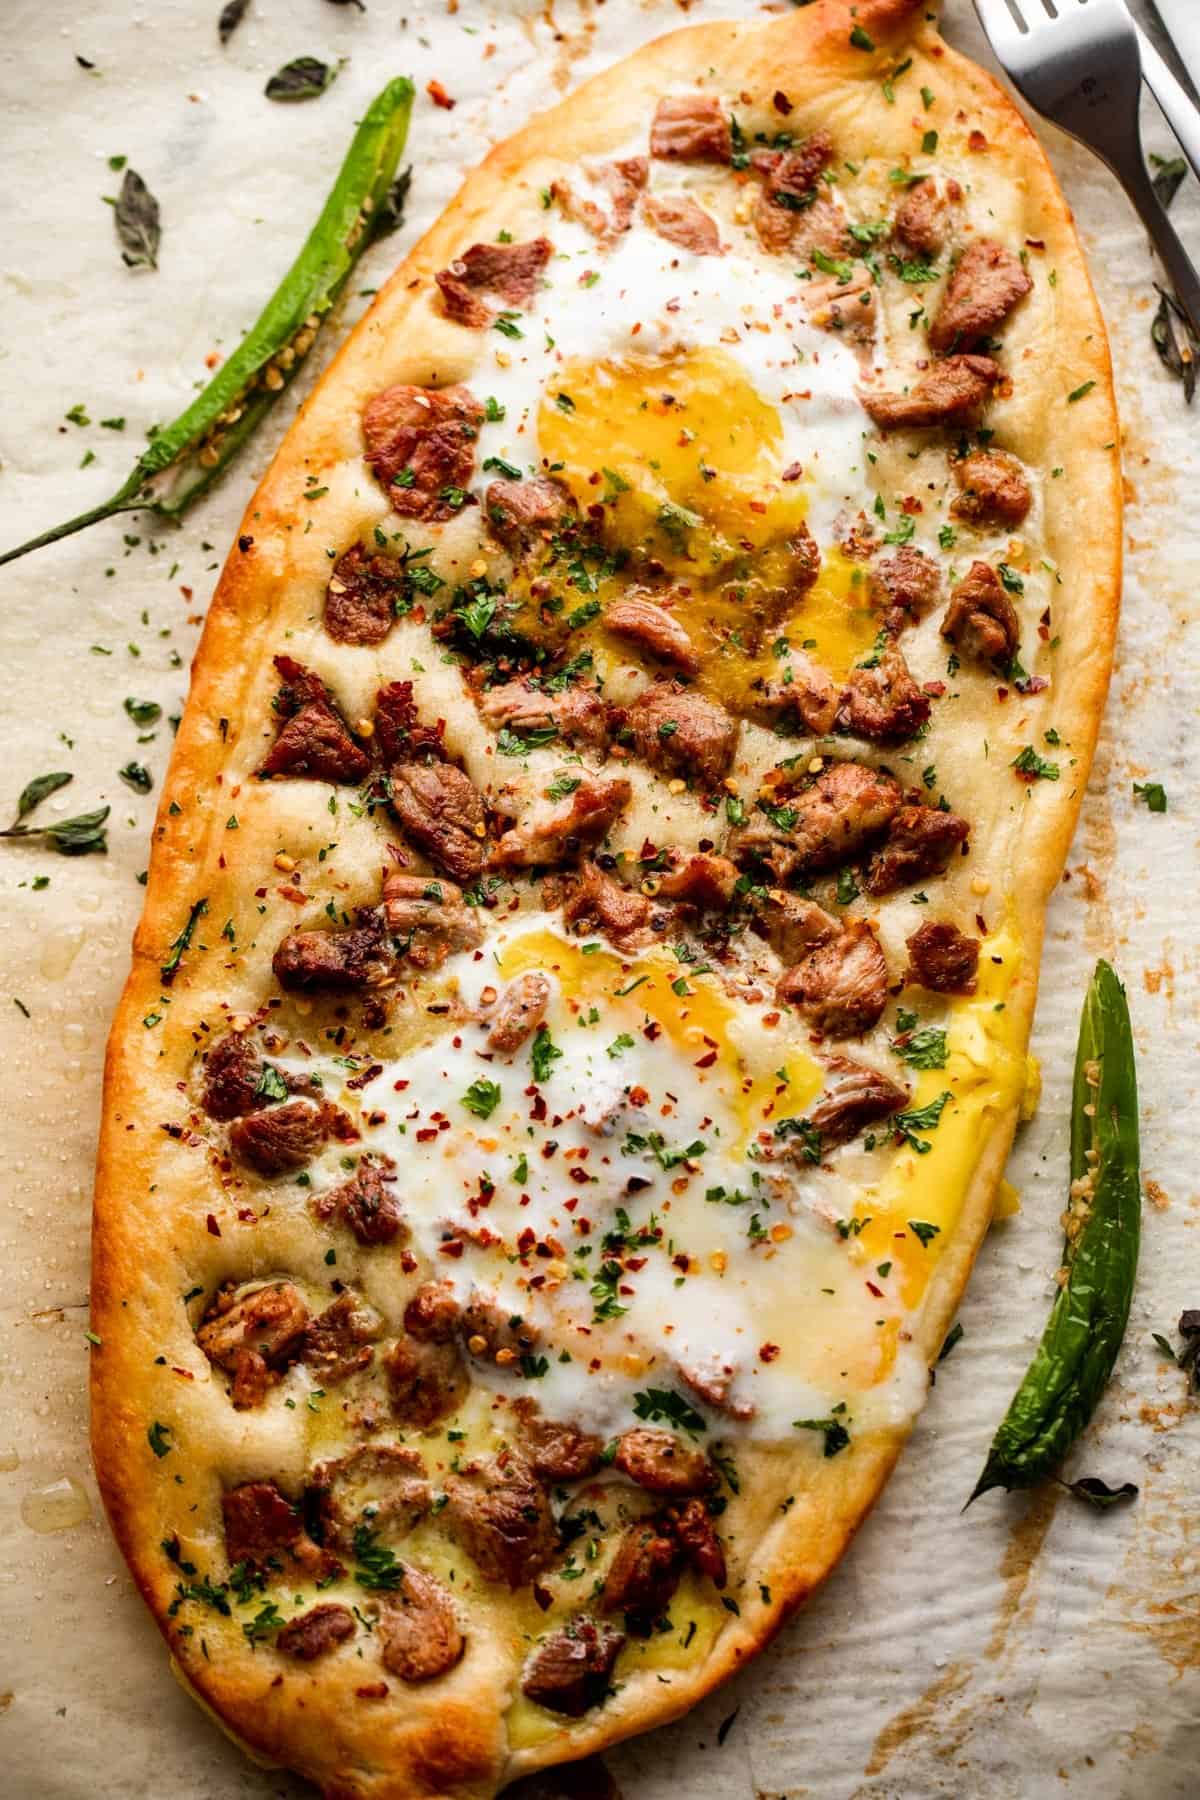 Fotografía cenital de una pizza de forma ovalada con trozos de cerdo y huevos fritos.